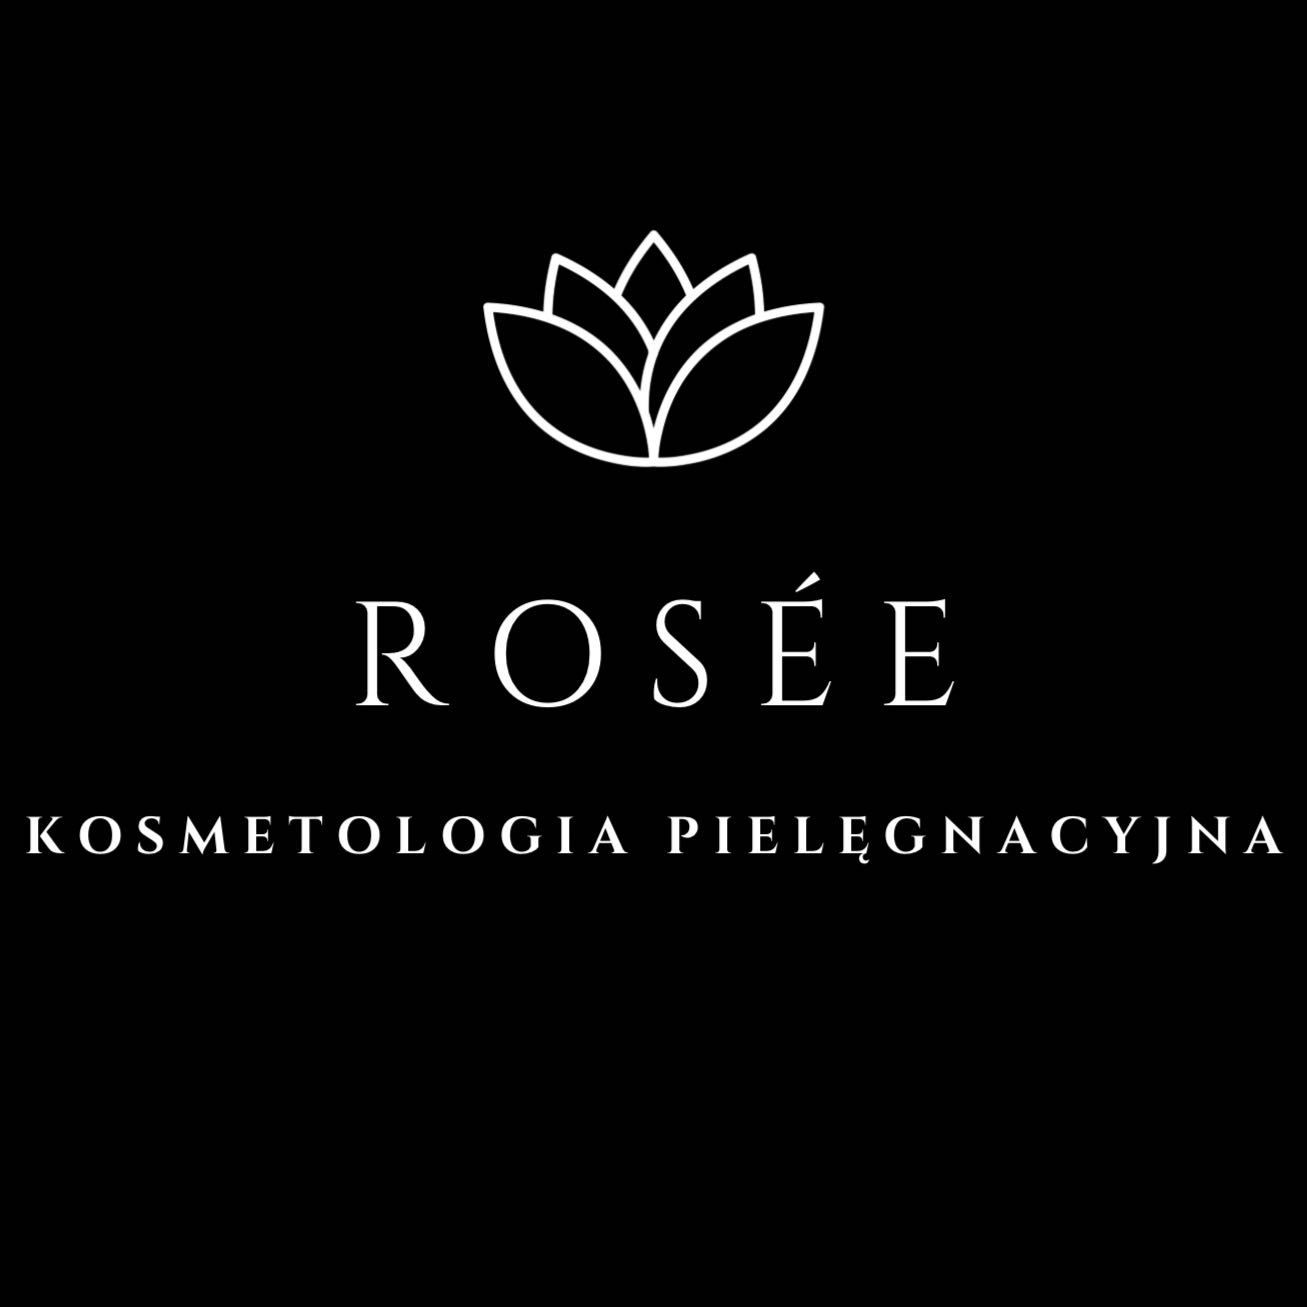 ROSEE kosmetologia pielęgnacyjna, Polna 7A, Wejście drzwiami FRYZMEN, 82-500, Kwidzyn